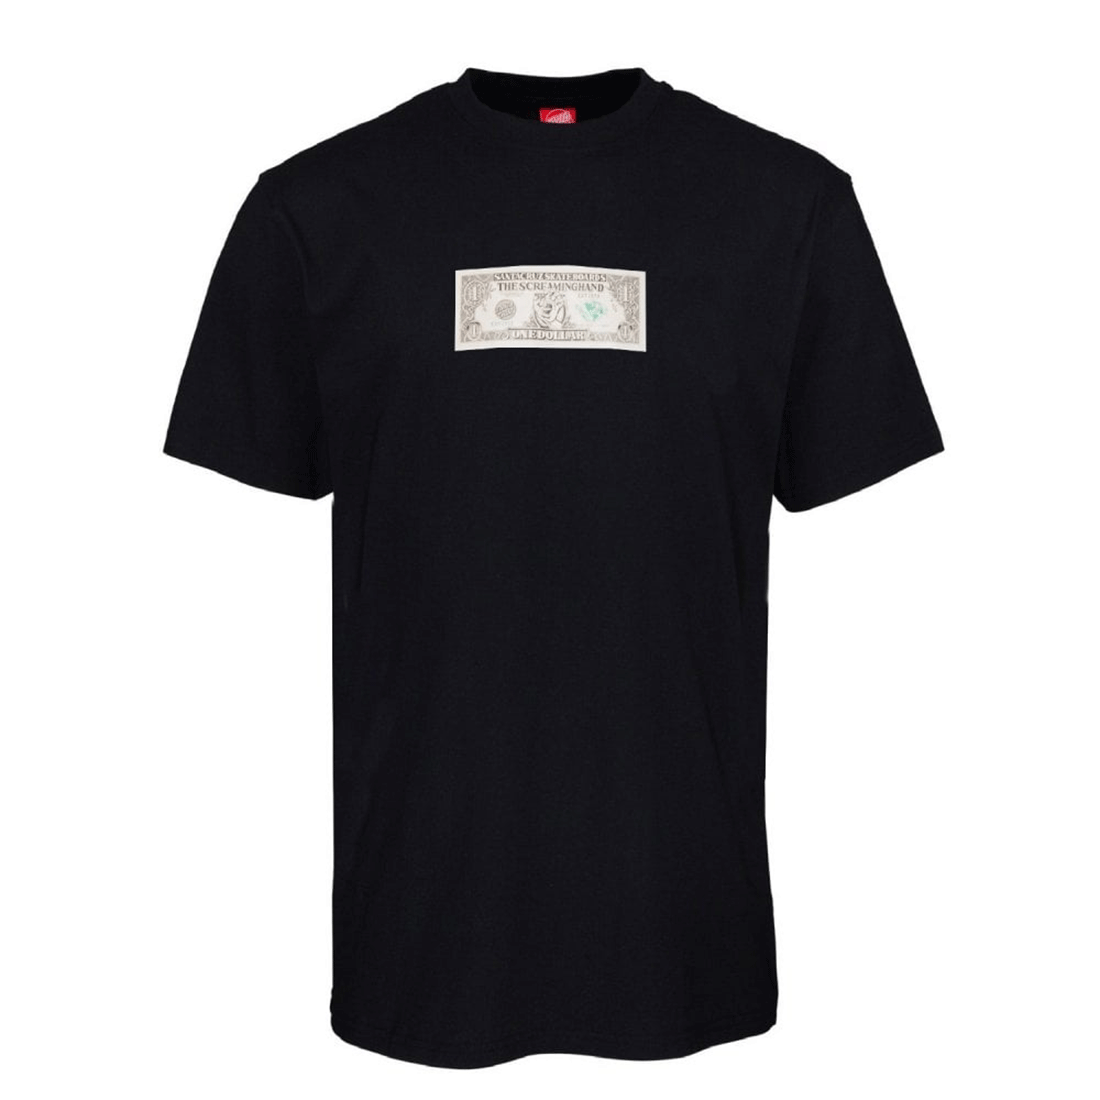 Santa Cruz Short Sleeve T-Shirt - Mako Dollar Tee - Black